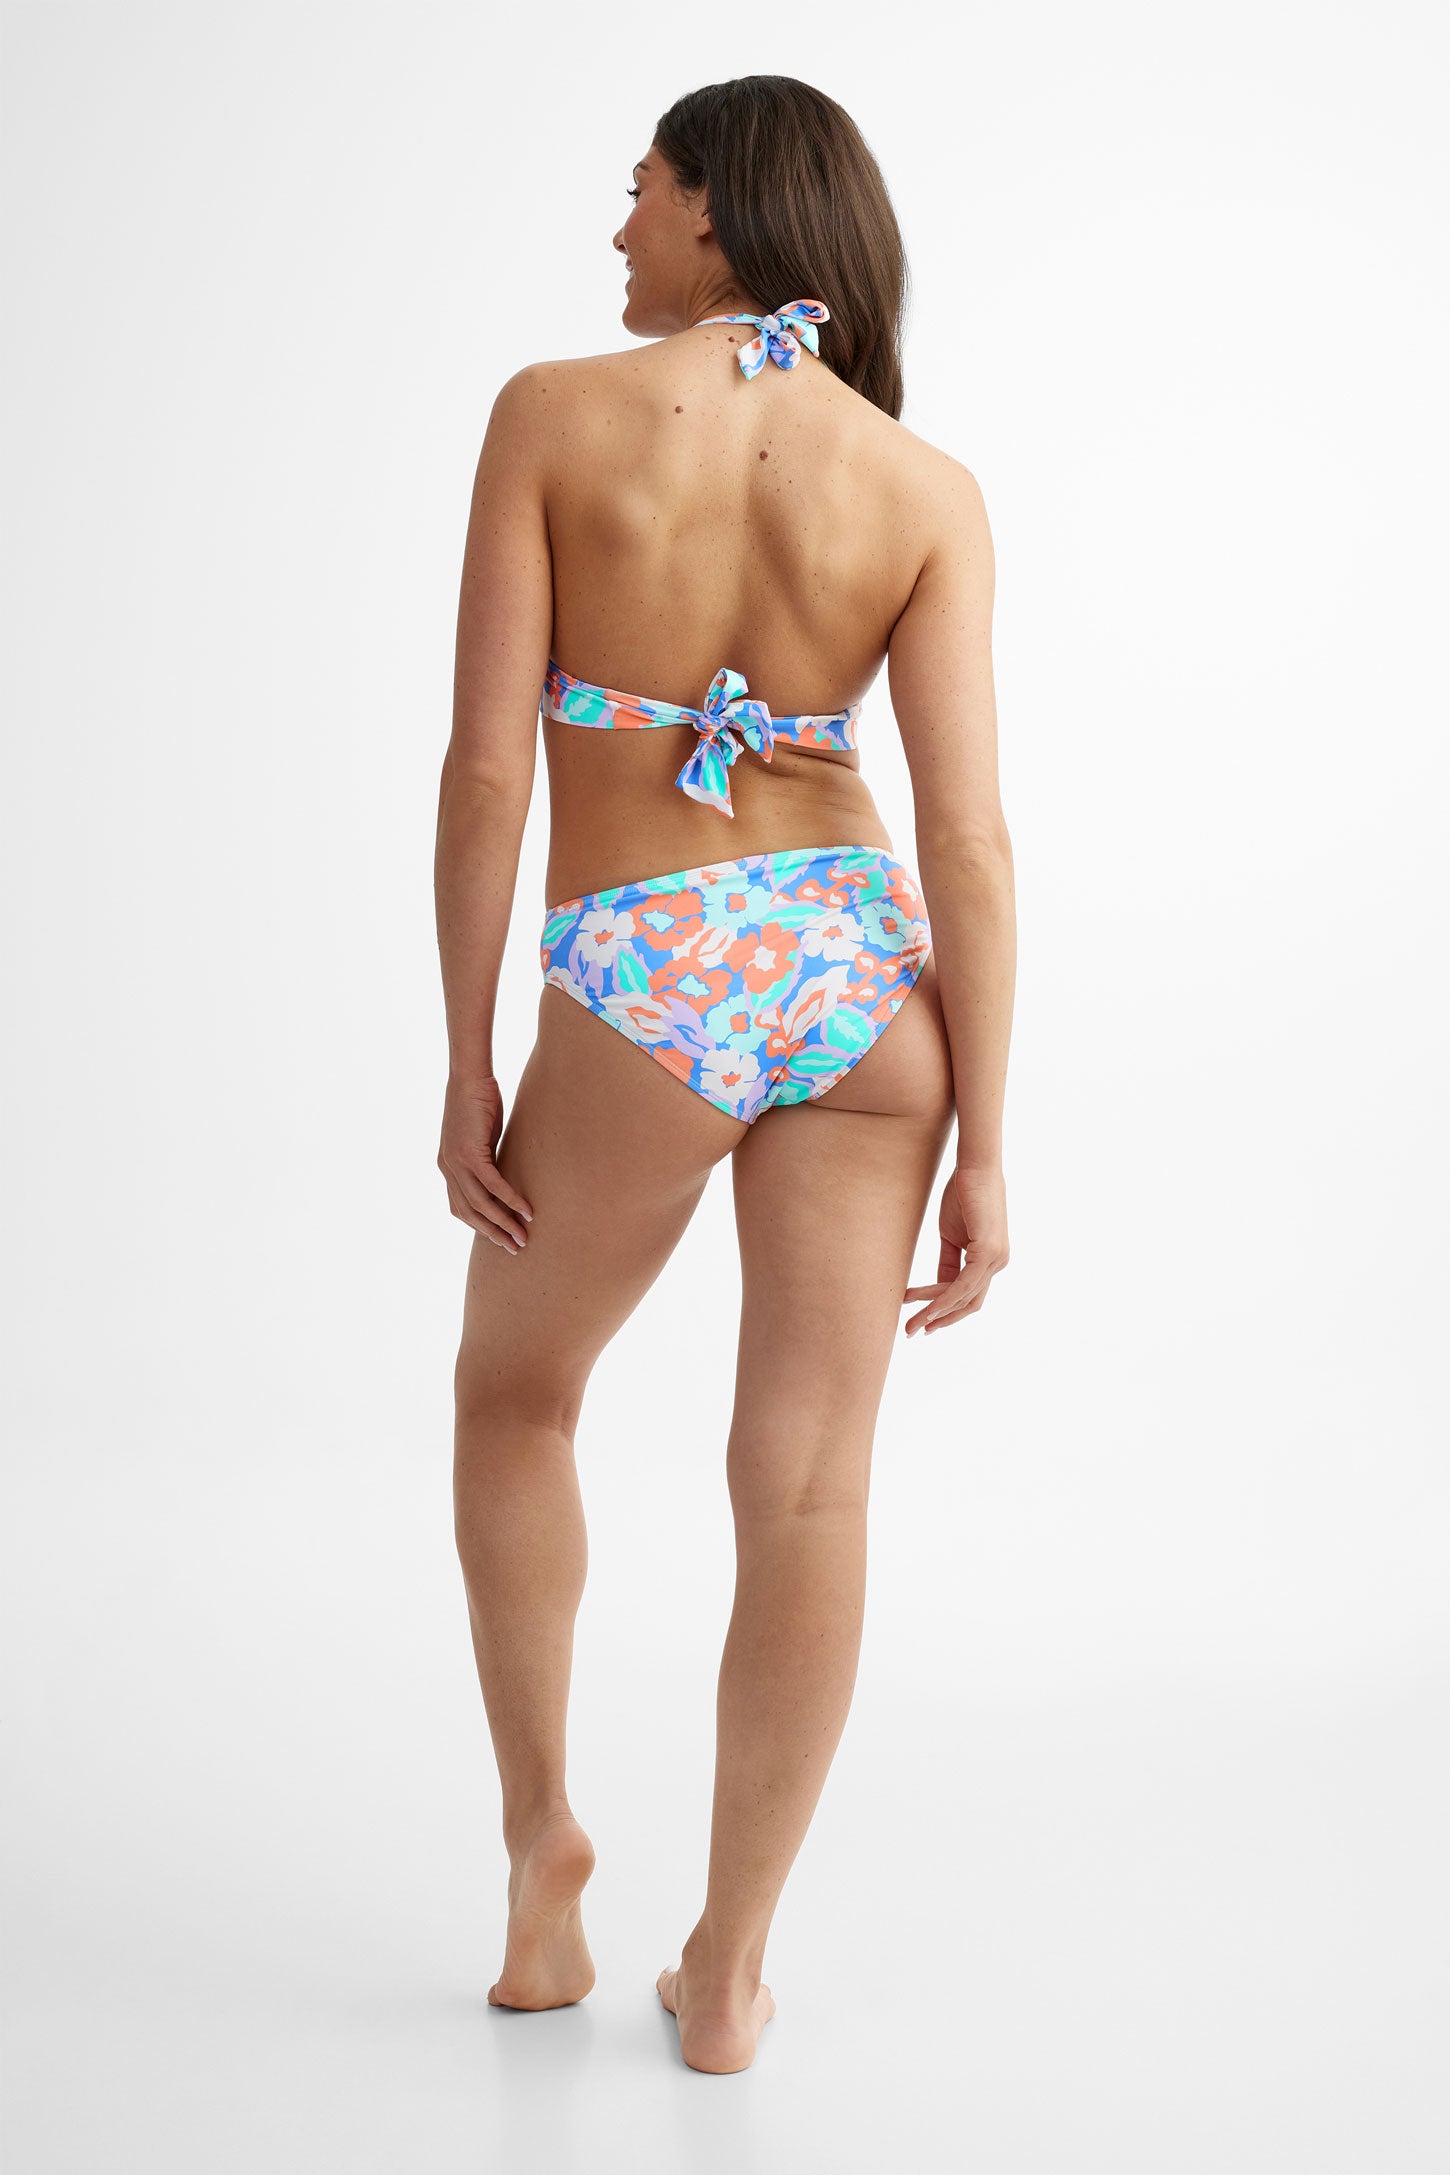 Haut maillot de bain bikini triangle, 2/40$ - Femme && TURQUOISE/MULTI